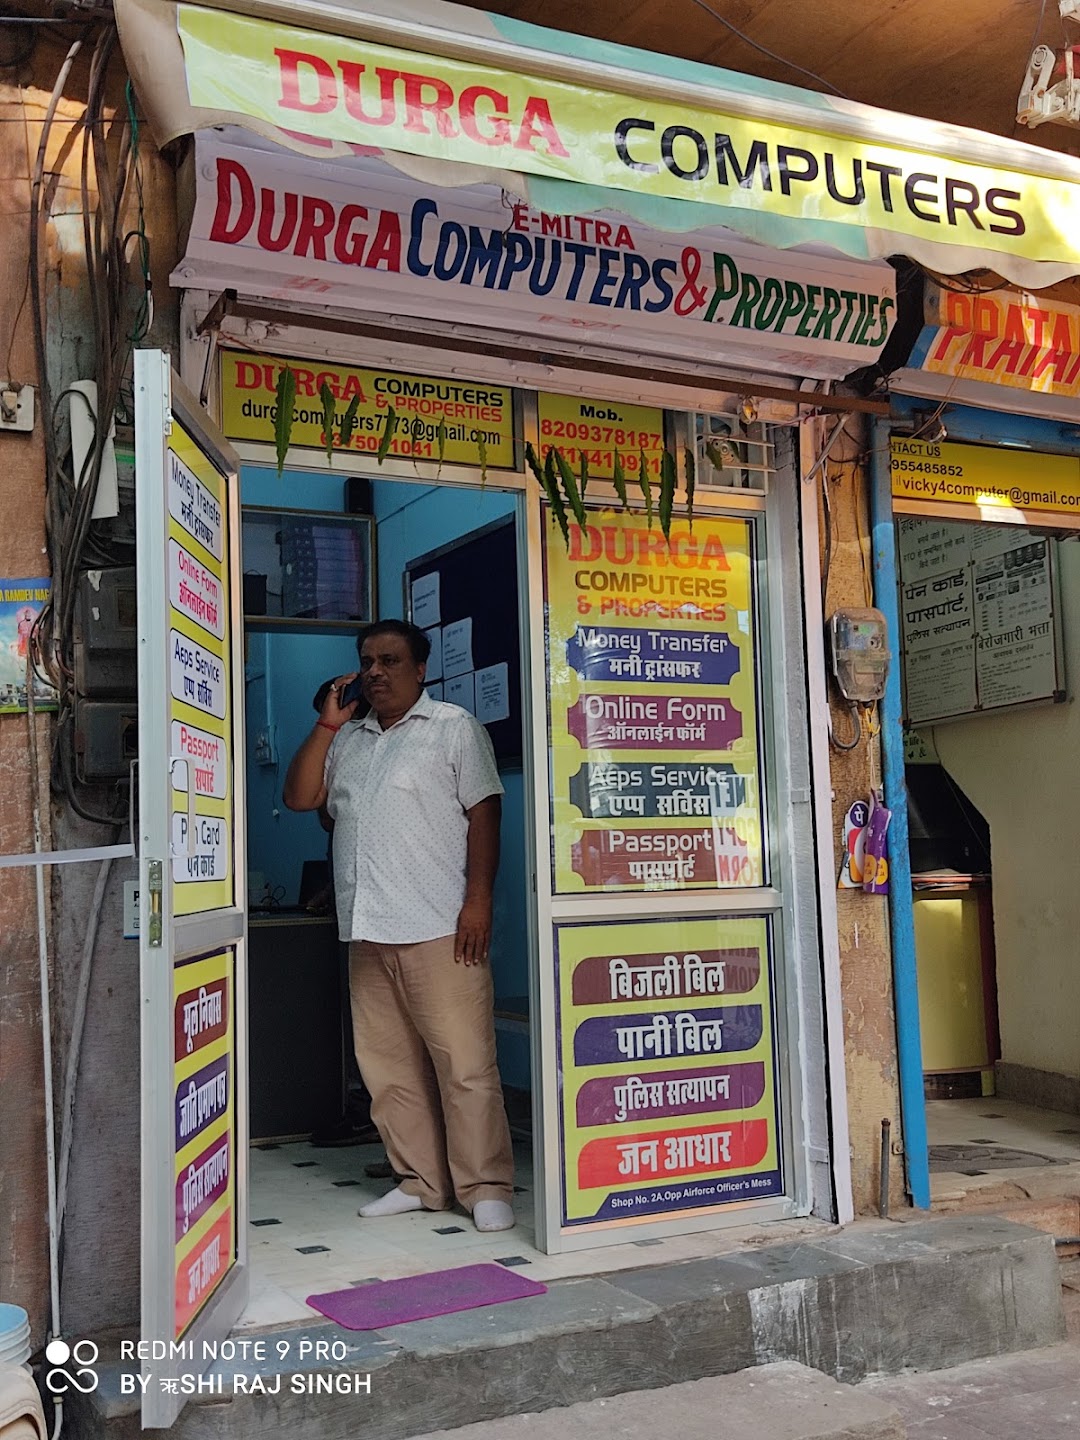 Durga computers & properties